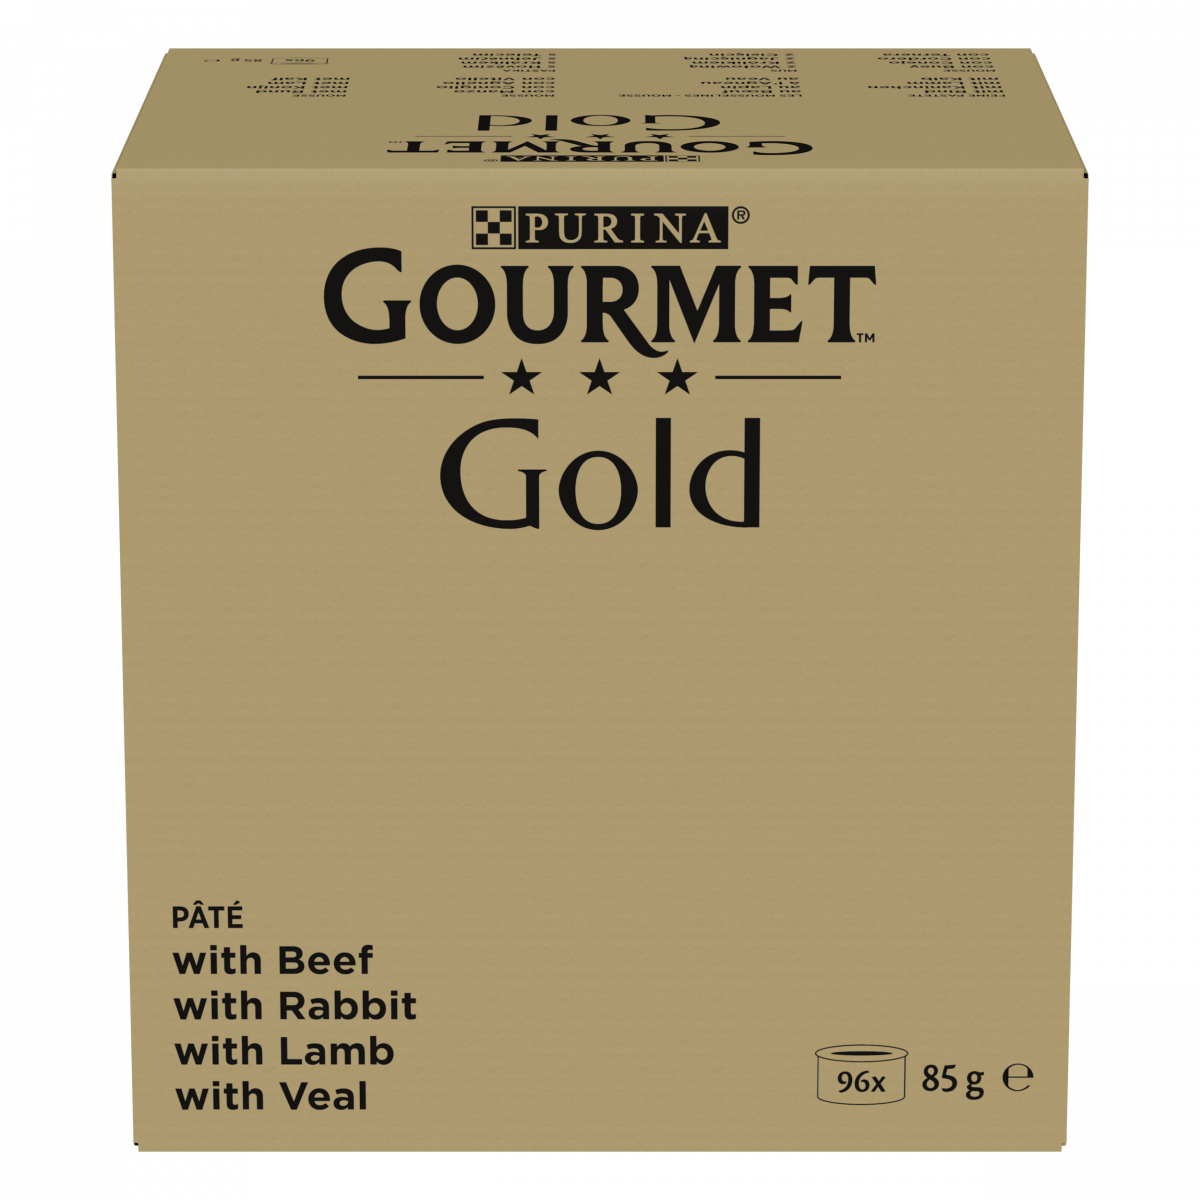 Purina Gourmet Gold mousse au lapin, bœuf, veau, agneau pâtée pour chat  (24x85g) 